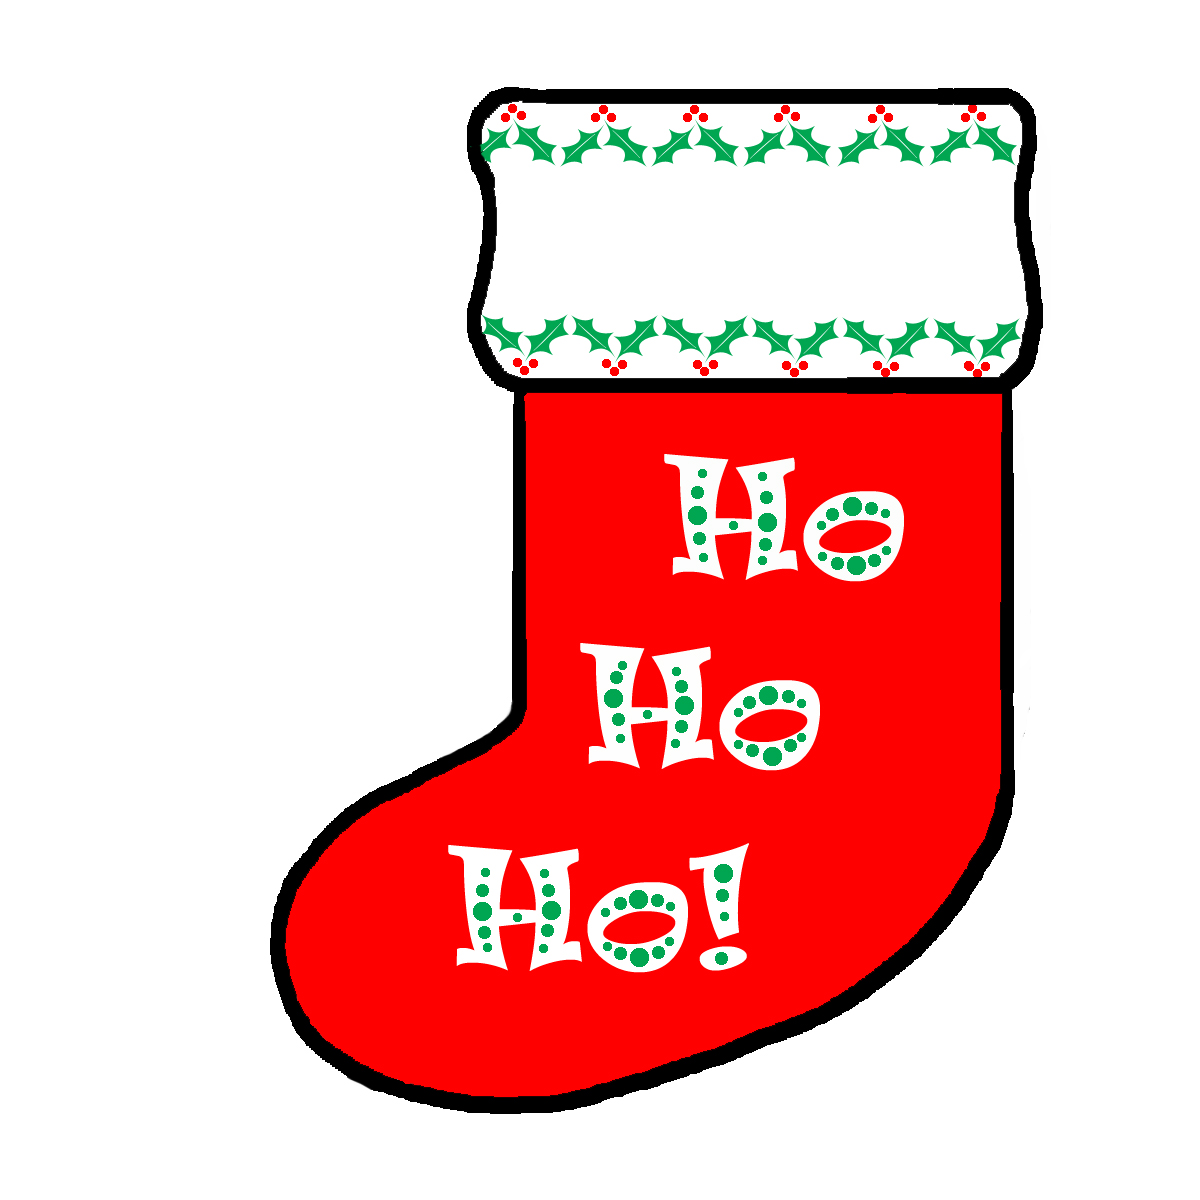 Printable Christmas Stockings Clipart